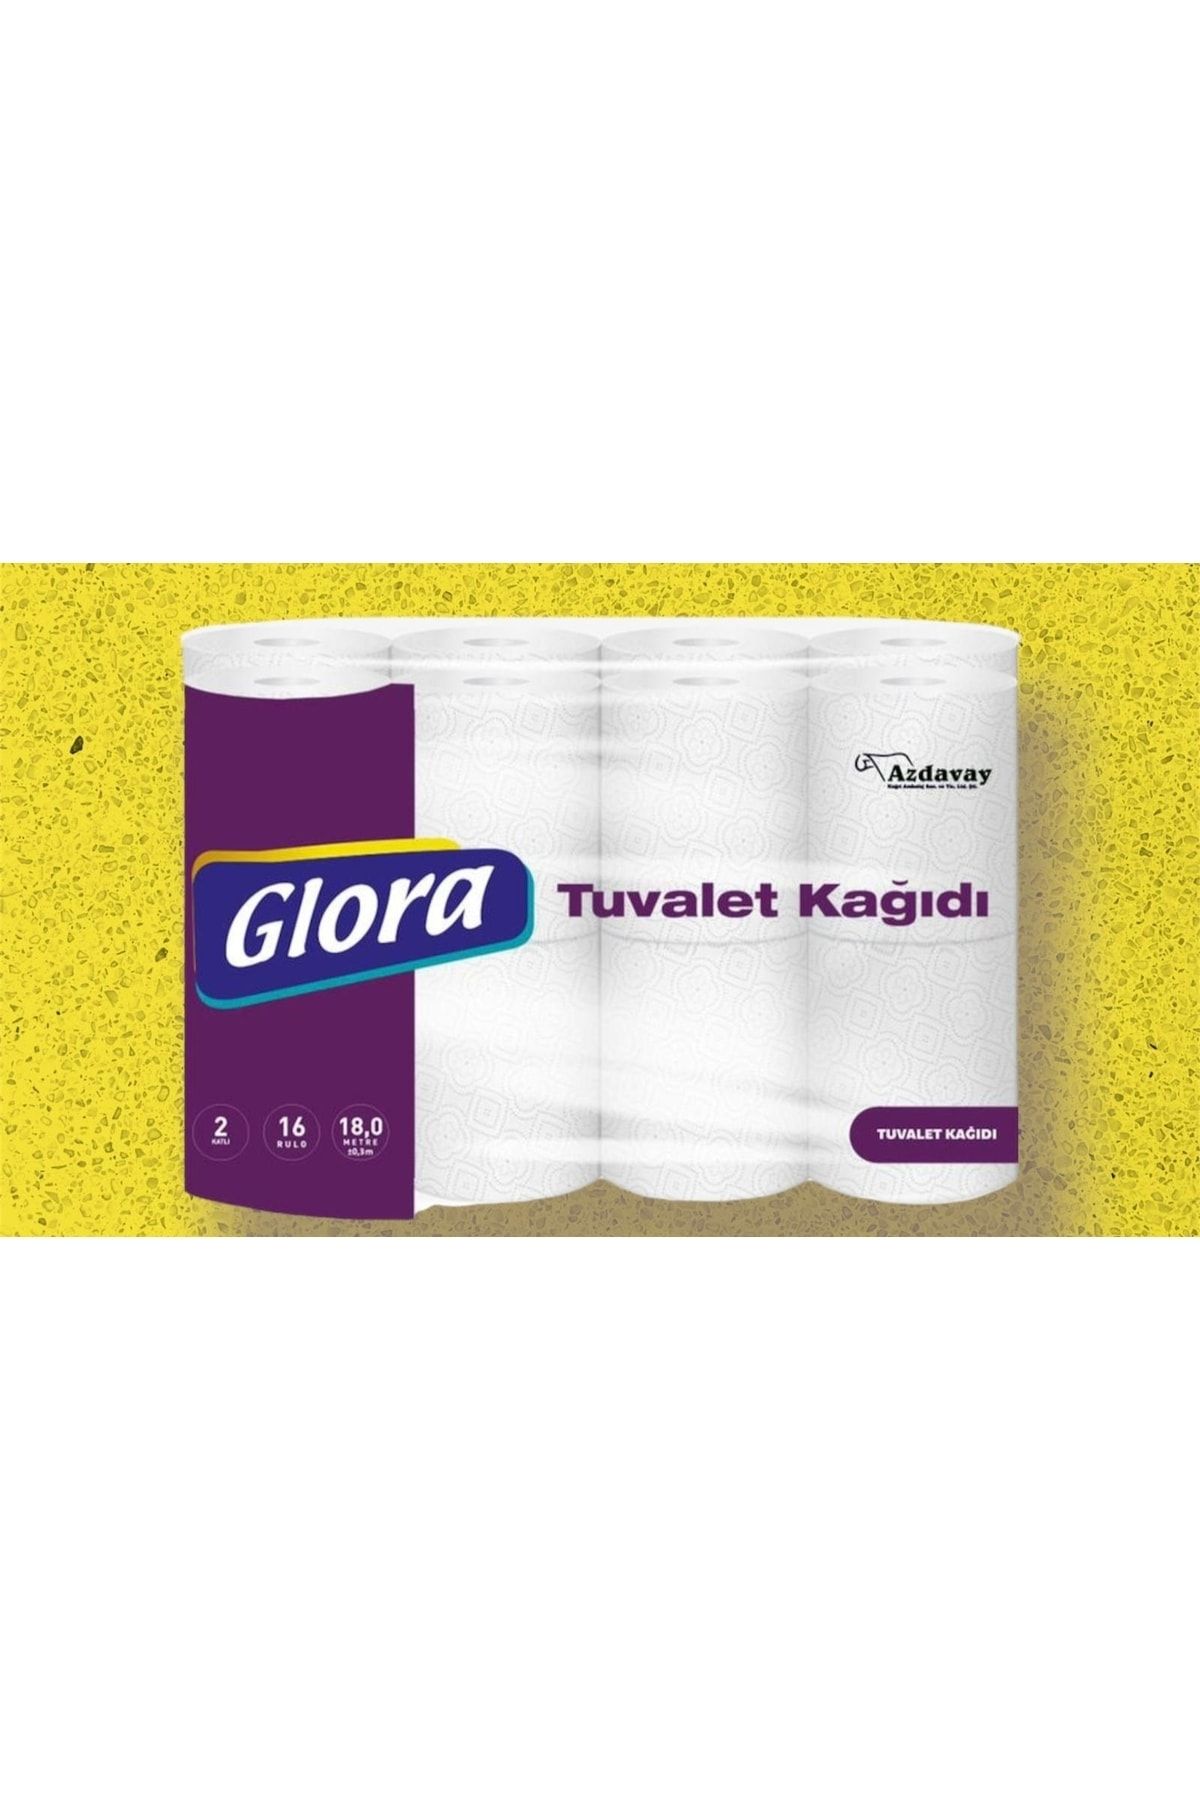 Glora Tuvalet Kağıdı 48 Rulo